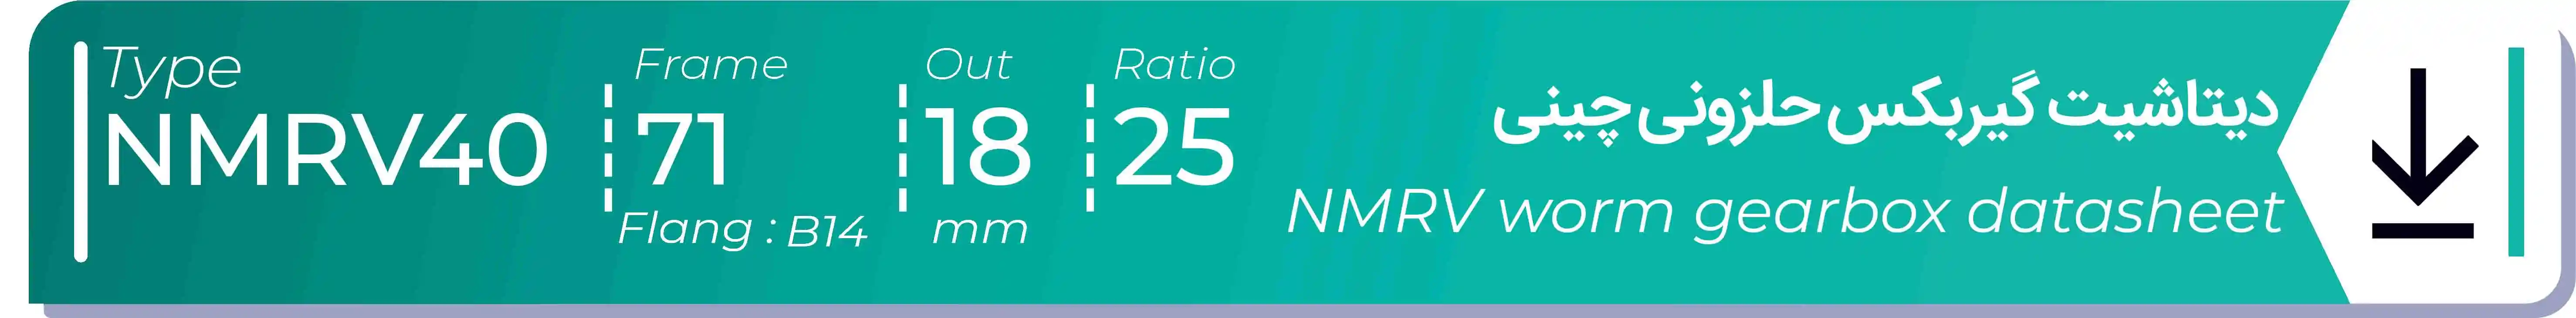  دیتاشیت و مشخصات فنی گیربکس حلزونی چینی   NMRV40  -  با خروجی 18- میلی متر و نسبت25 و فریم 71